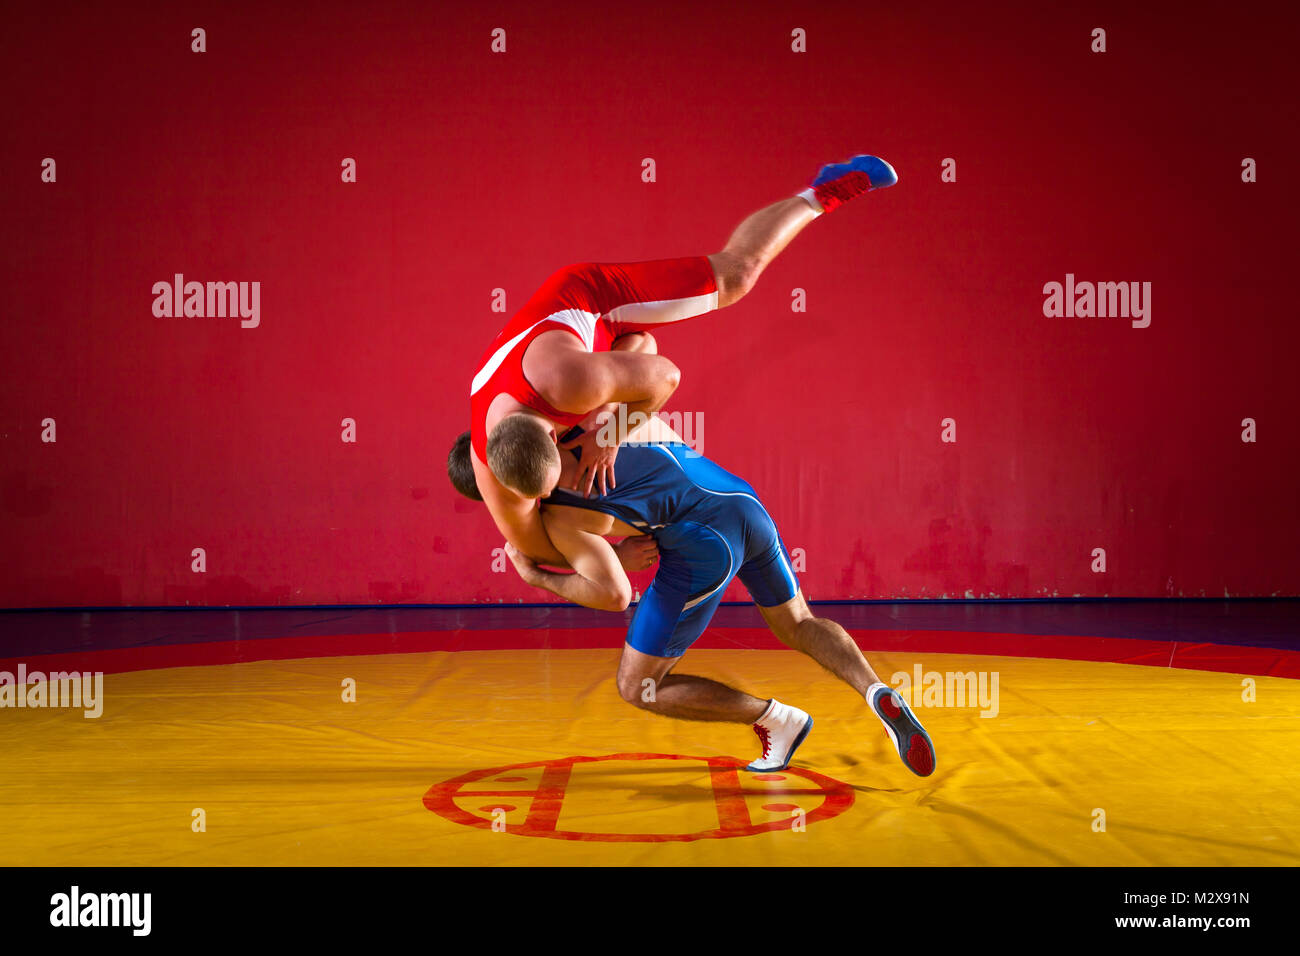 Deux jeunes hommes lutteurs dans le bleu et le rouge wrestling collants sont wrestlng et faire un jet de hanche sur un tapis de lutte jaune dans la salle de sport, sied voir Banque D'Images